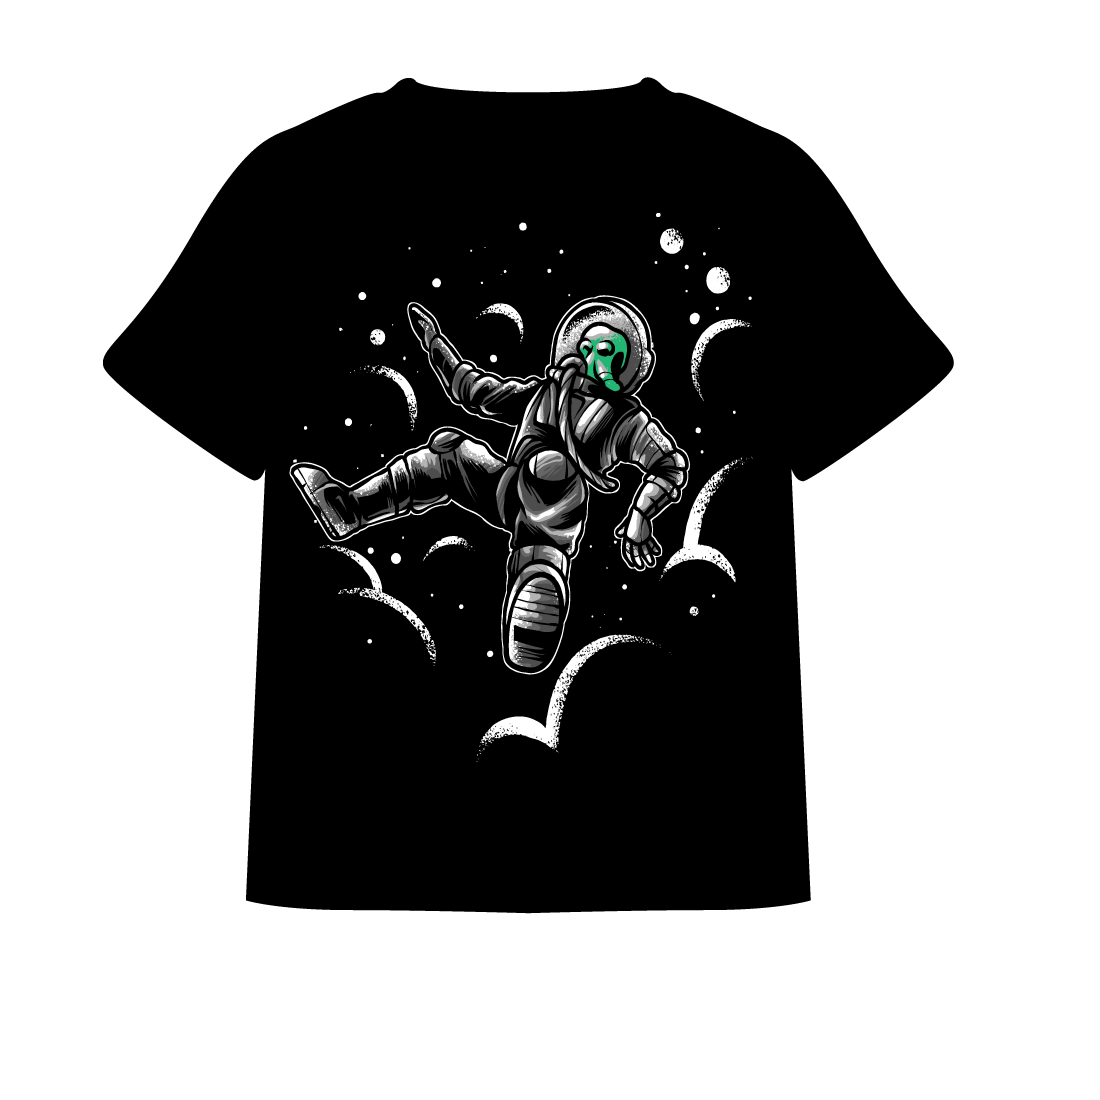 alien astronaut t-shirt cover image.